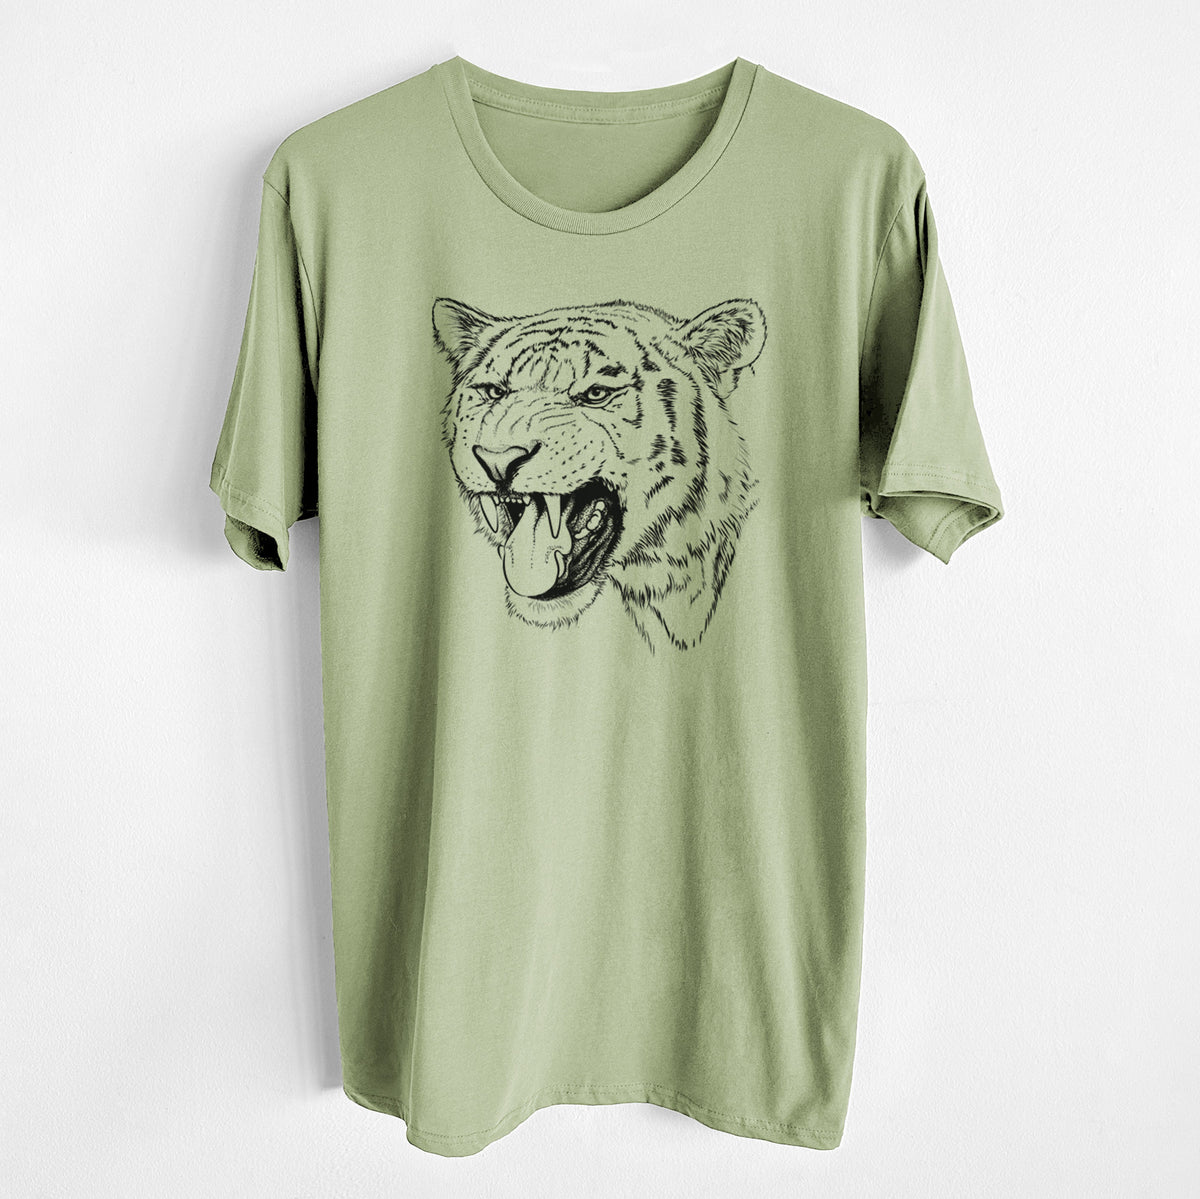 Siberian Tiger - Panthera tigris altaica - Unisex Crewneck - Made in USA - 100% Organic Cotton